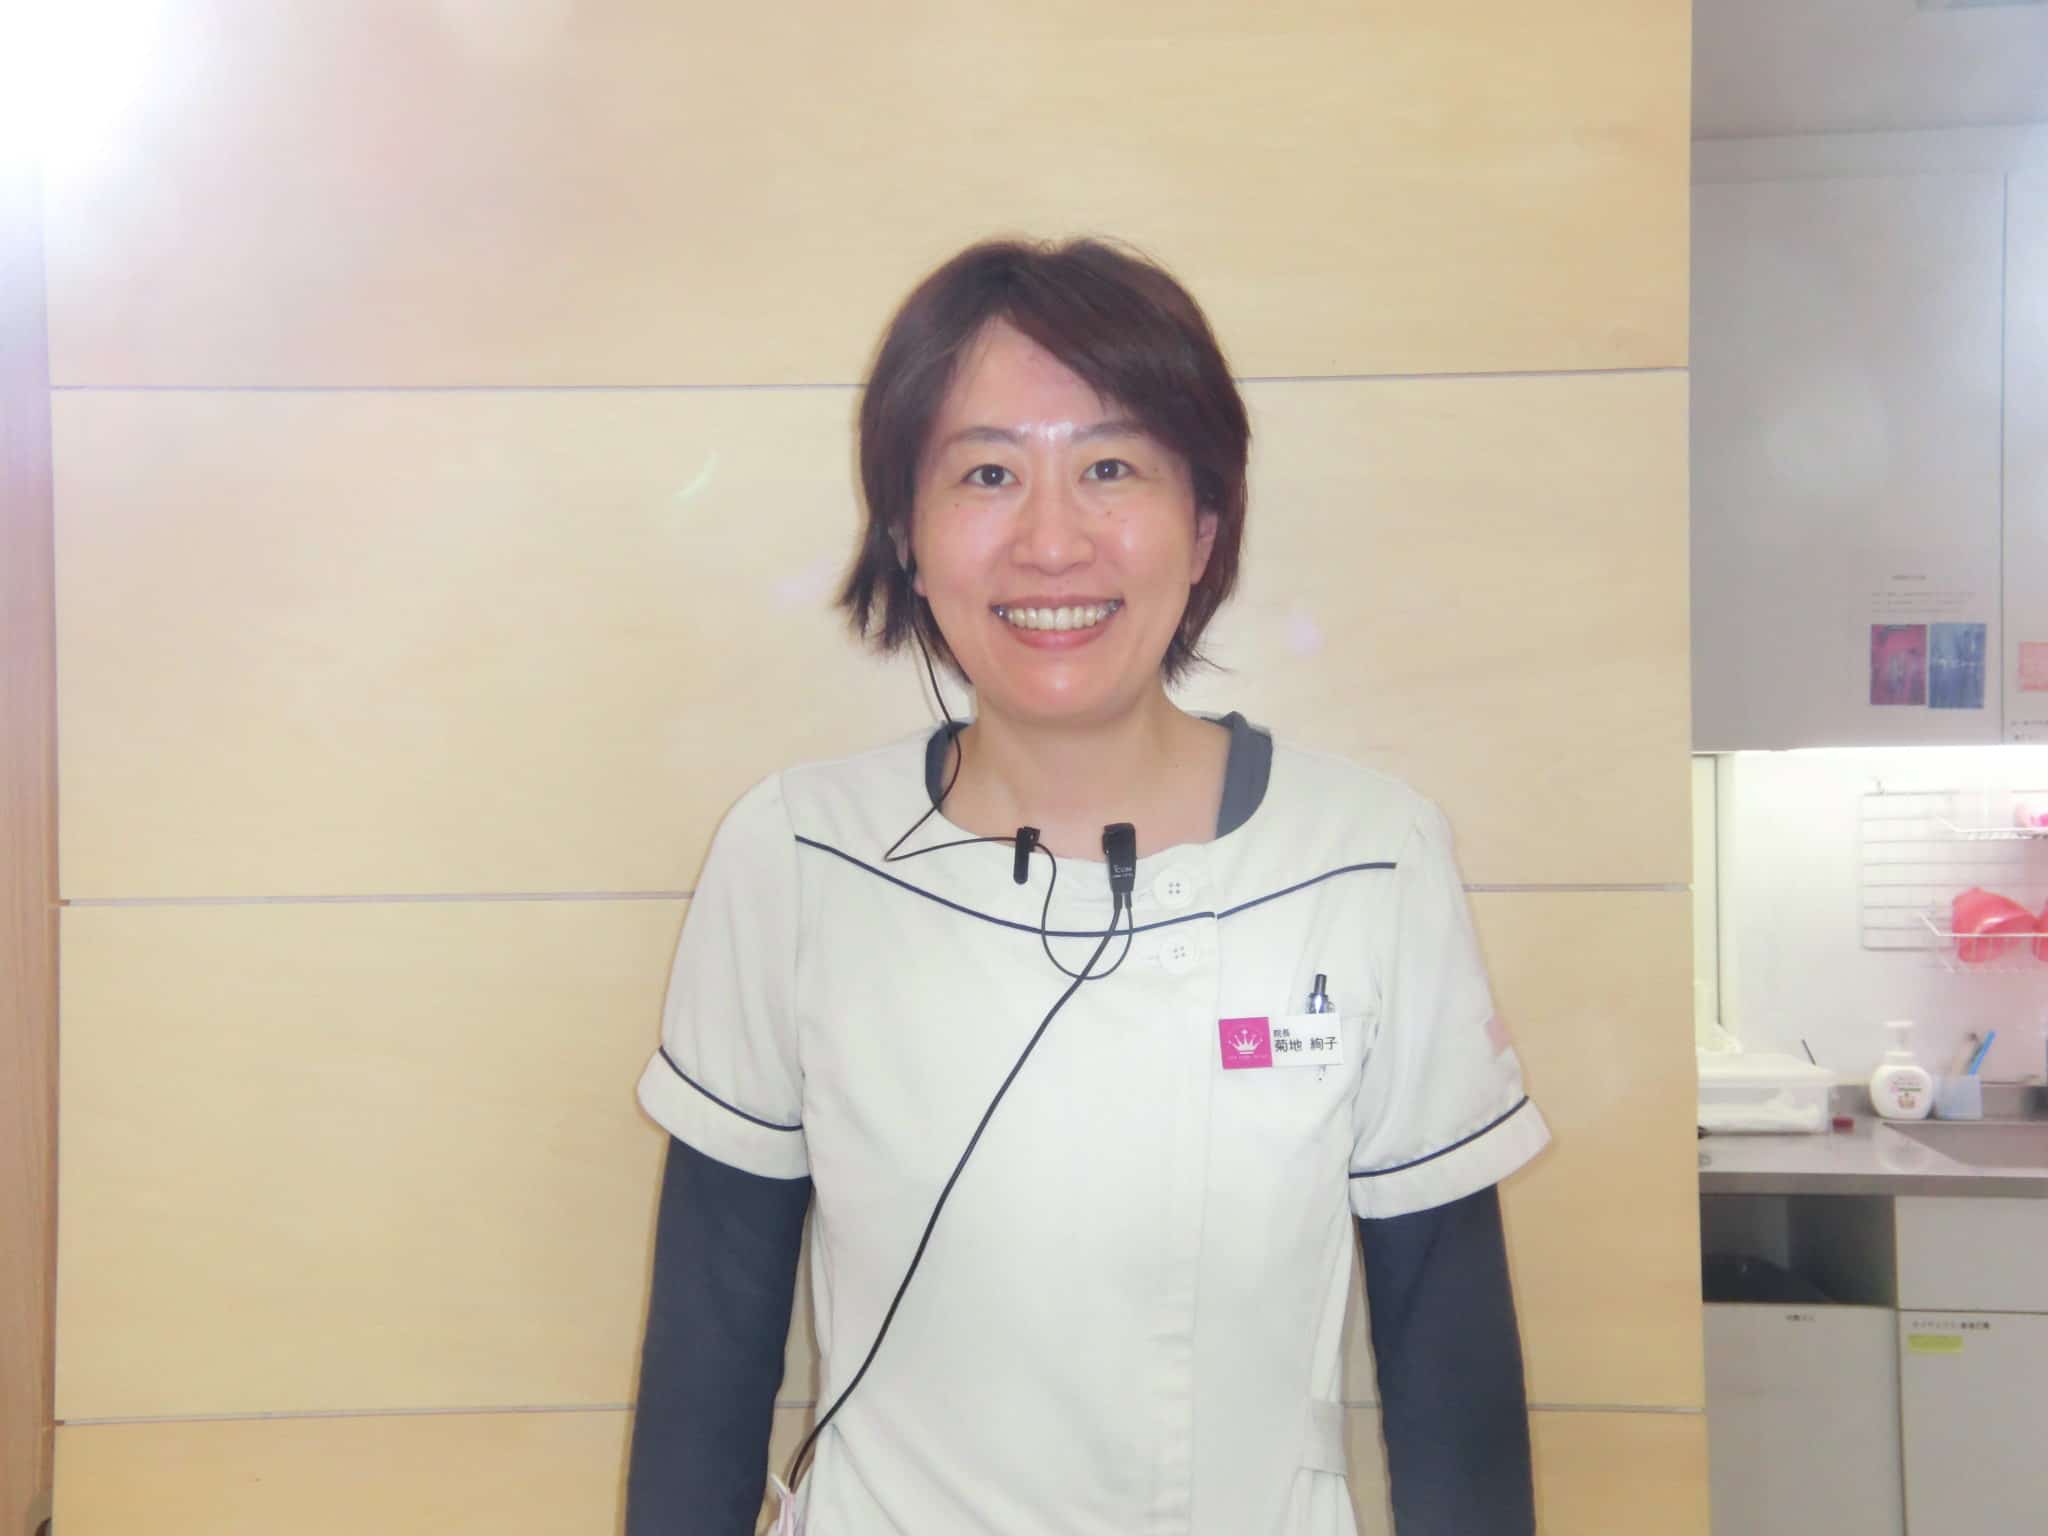 ヨクミル相談医師である菊地 絢子医師の写真